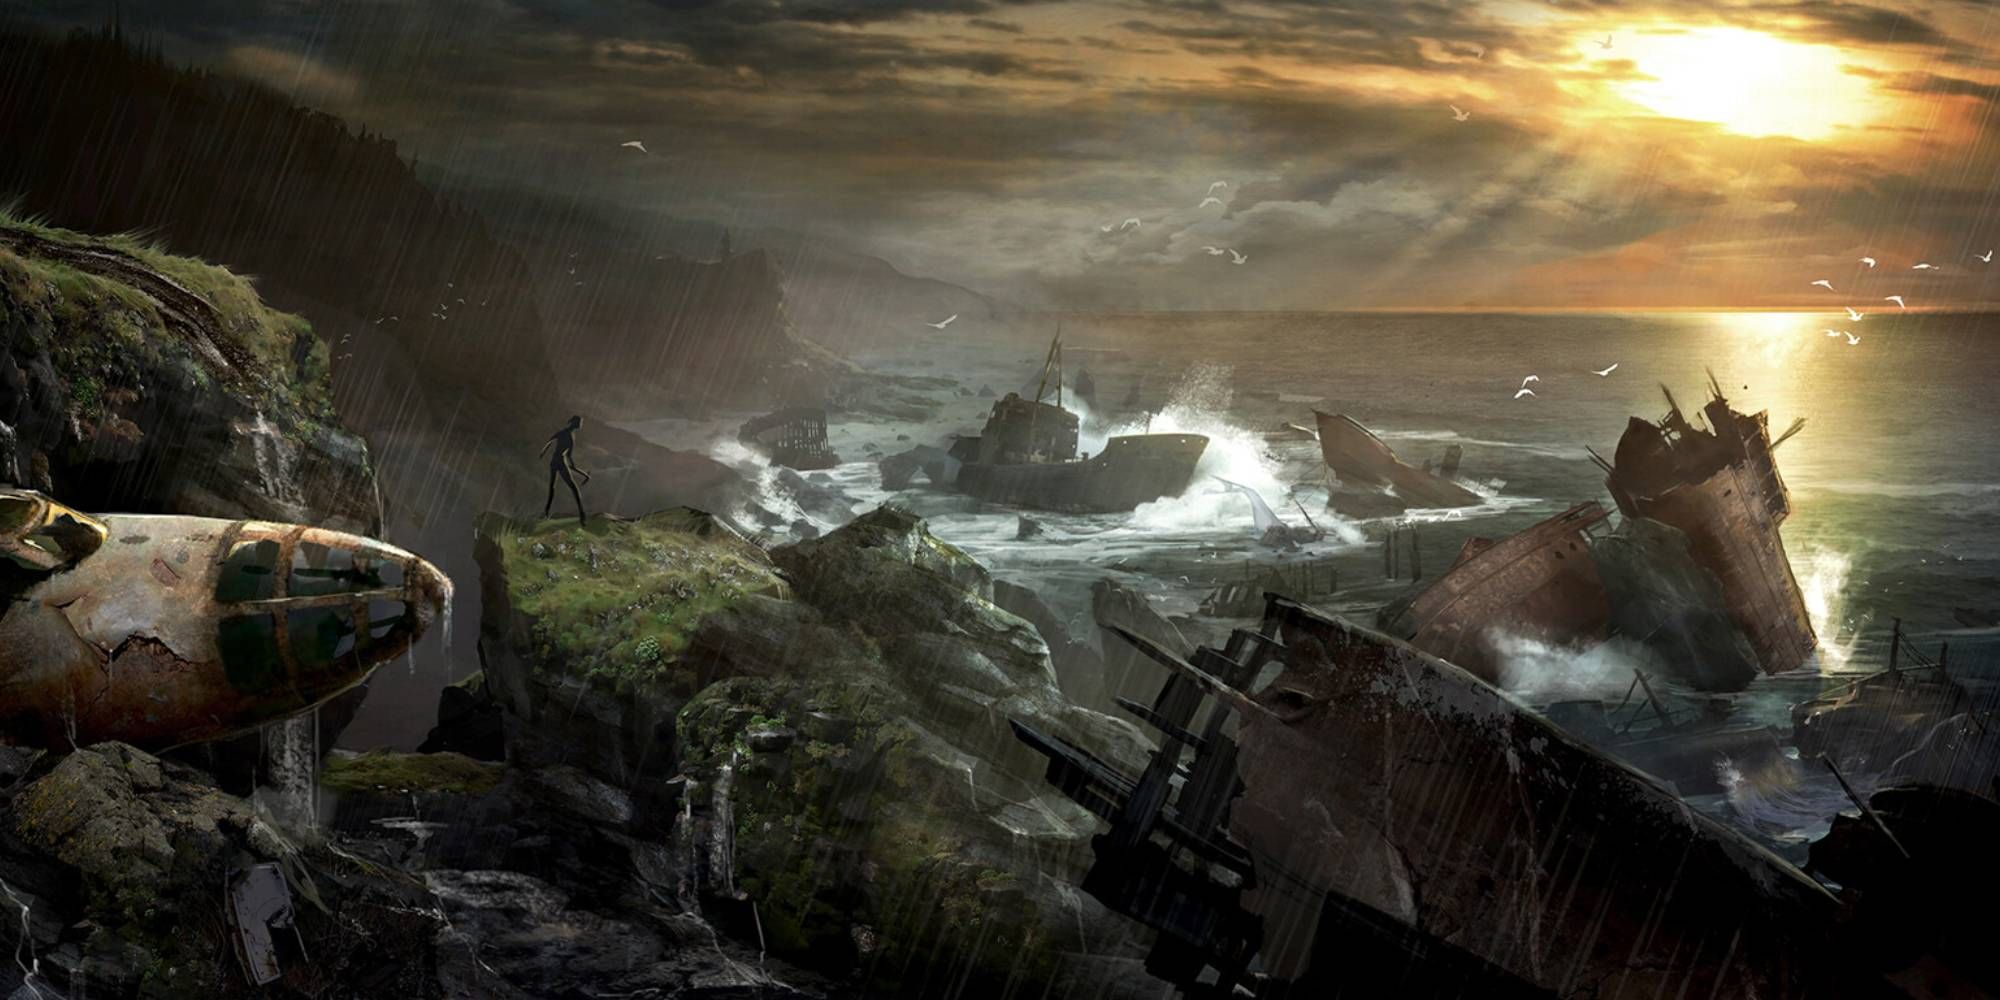 Ein Gemälde mit einer einsamen Figur auf einer Klippe nach einem Schiffbruch